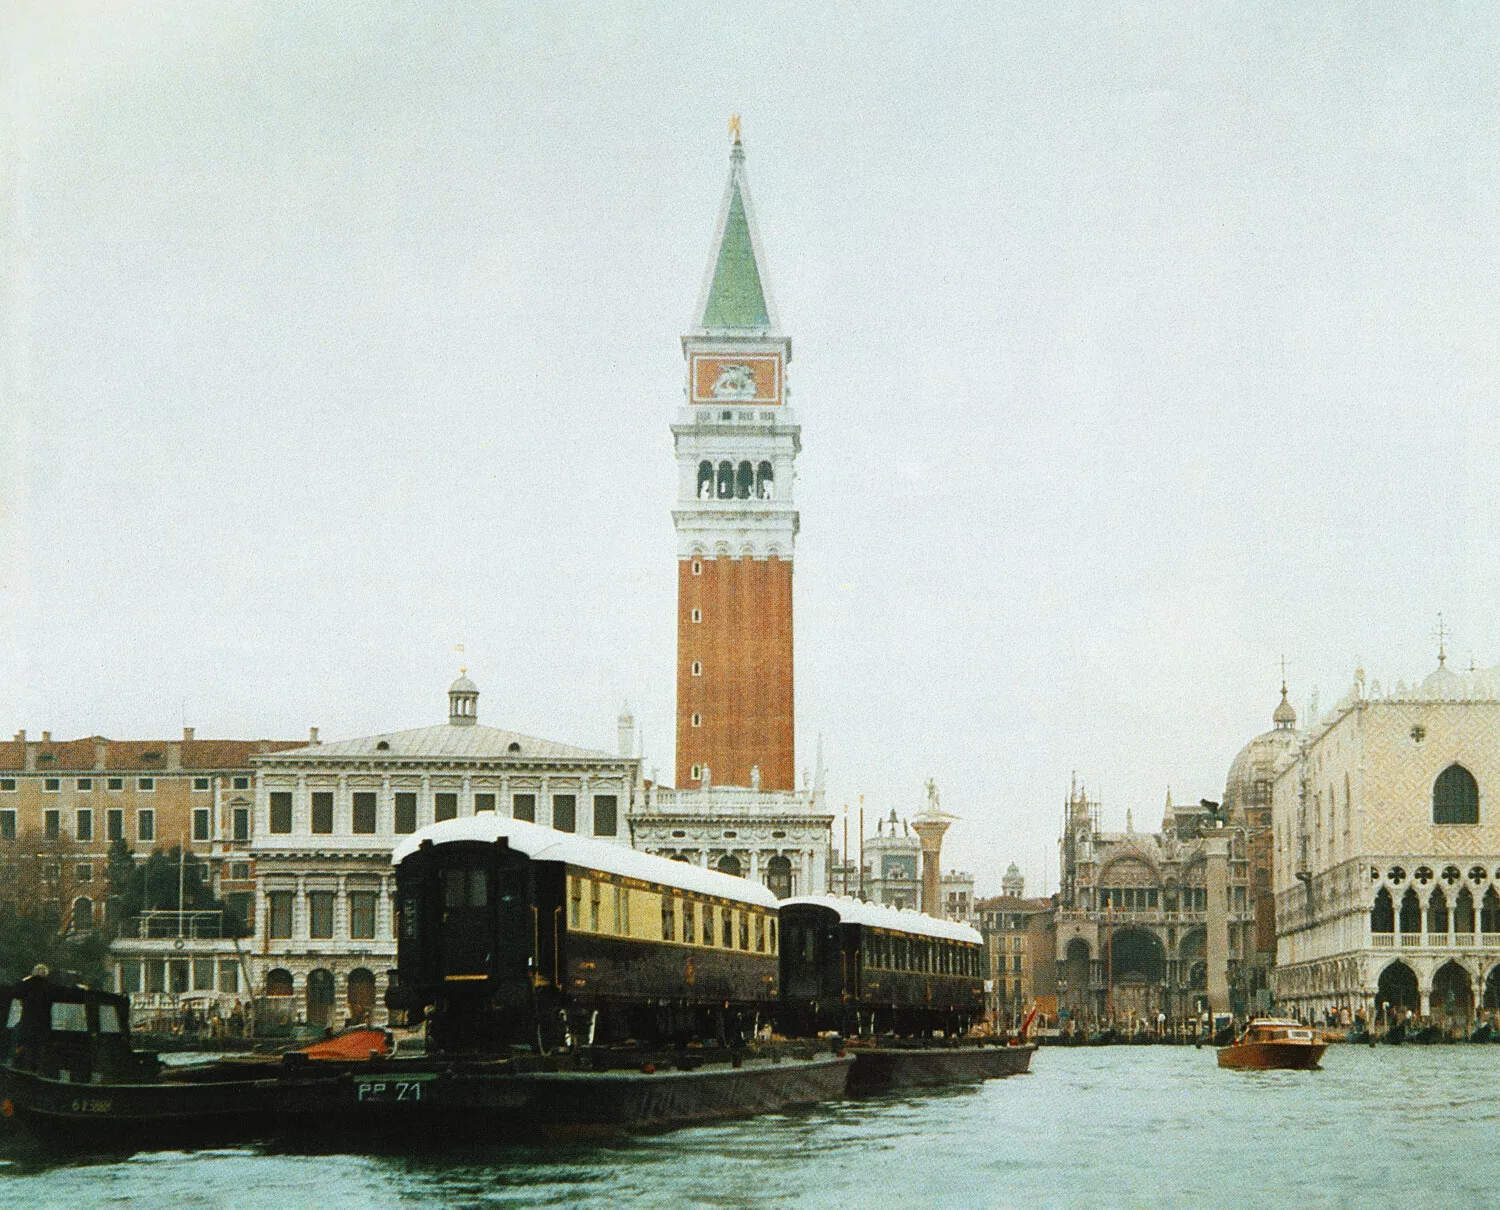 Το ολοκαίνουργιο βαγόνι του Orient-Express αποκαλύφθηκε στη Βενετία